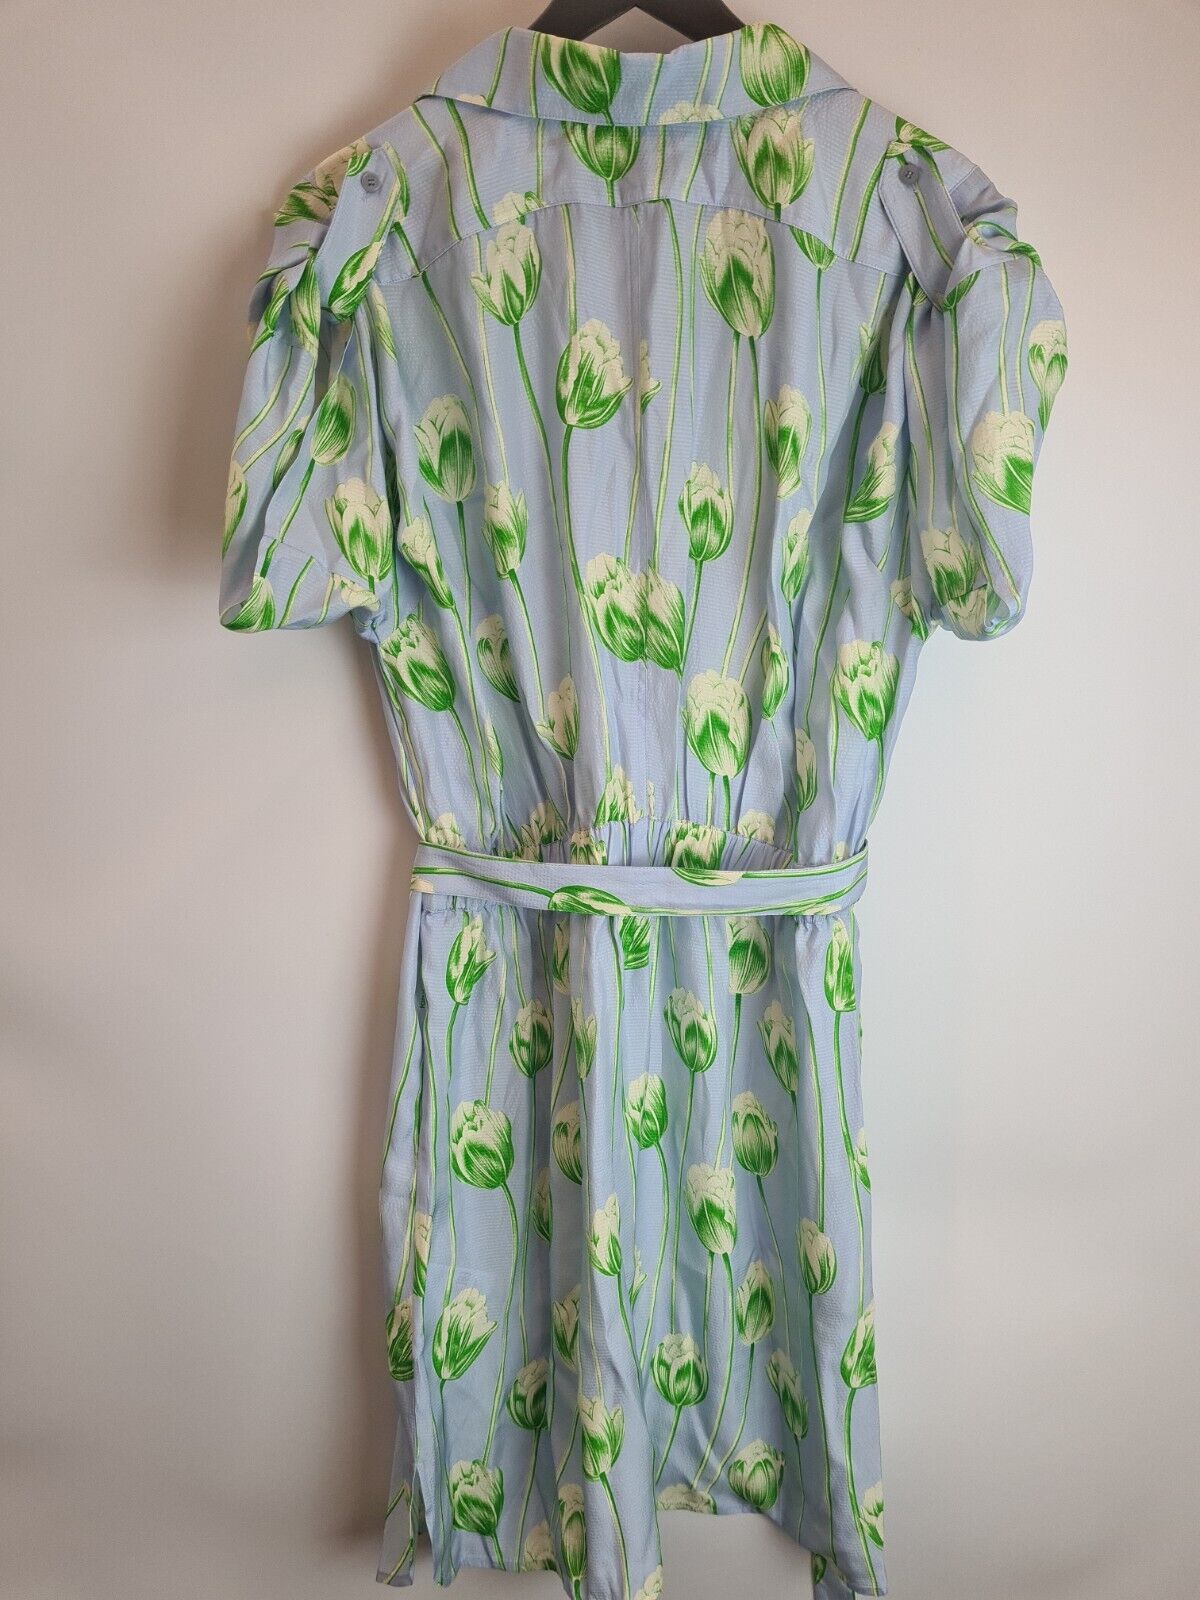 Kenzo Printed Shirting Waisted Dress Size 42/ UK SIZE 14**** V385